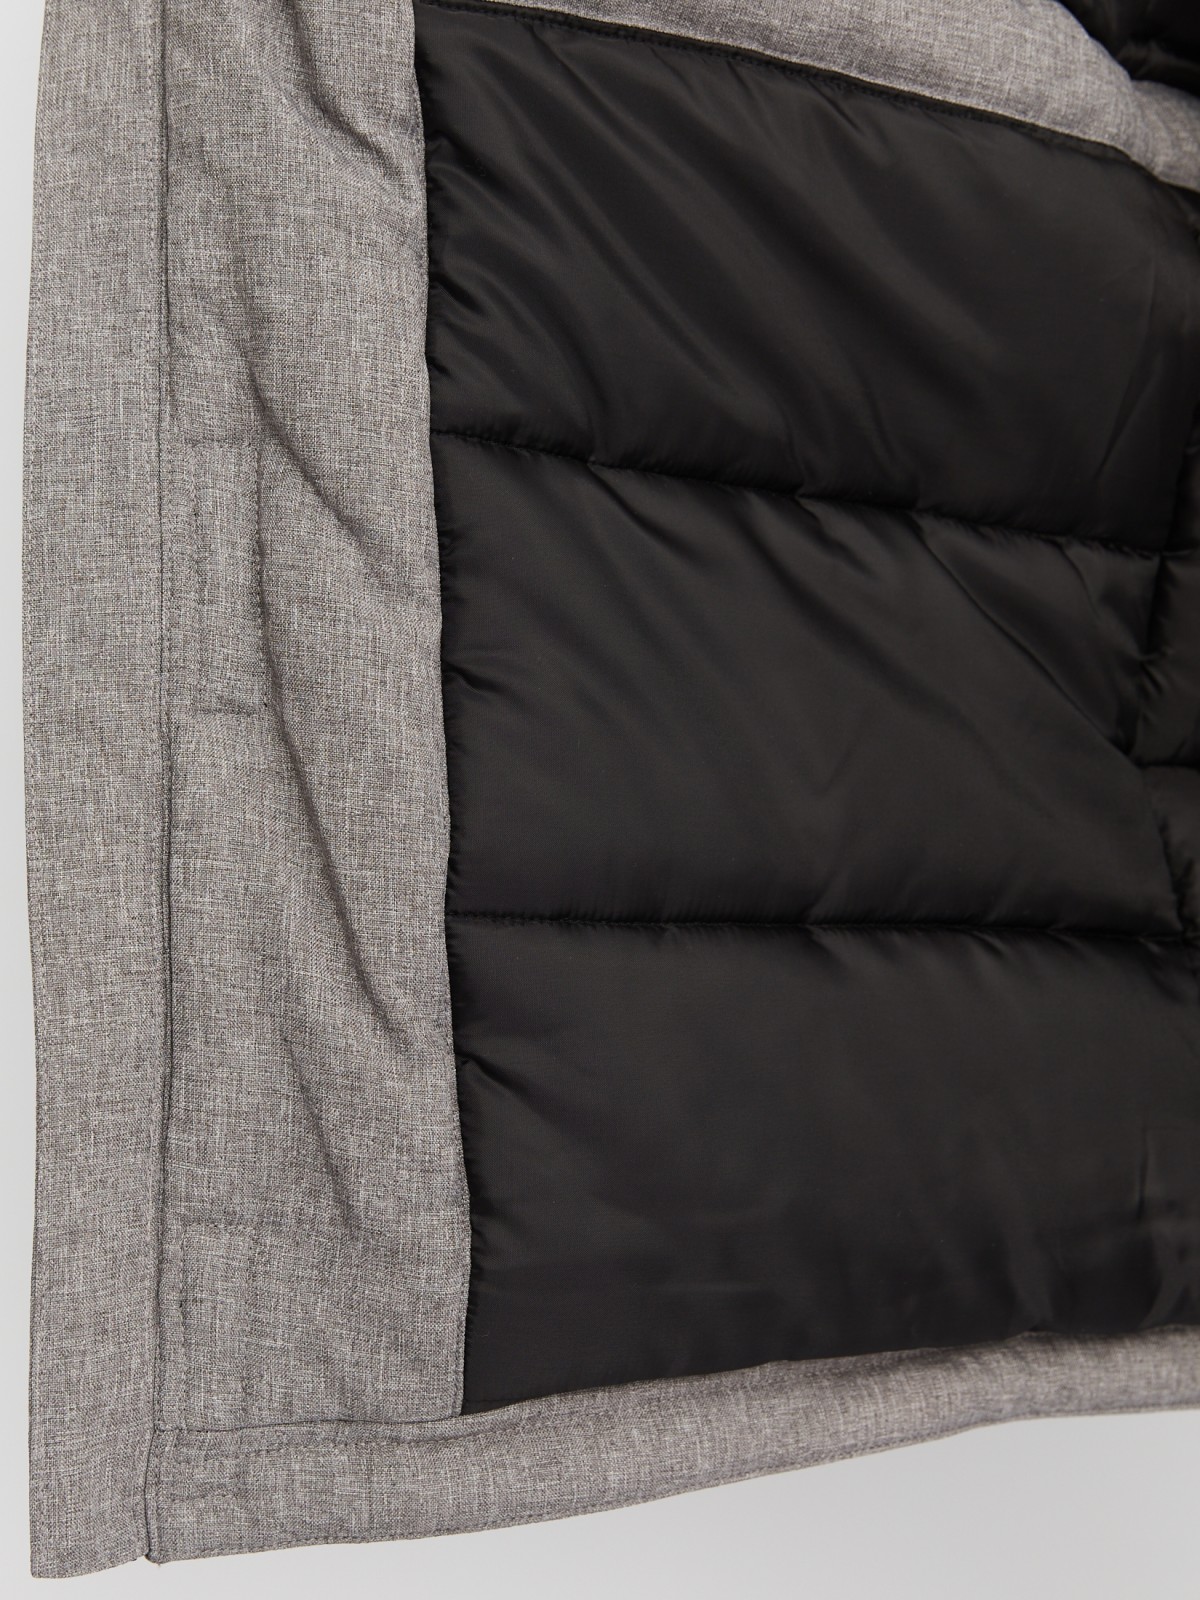 Тёплая удлинённая куртка-парка с капюшоном и кулиской на талии zolla 012425212104, цвет серый, размер M - фото 6